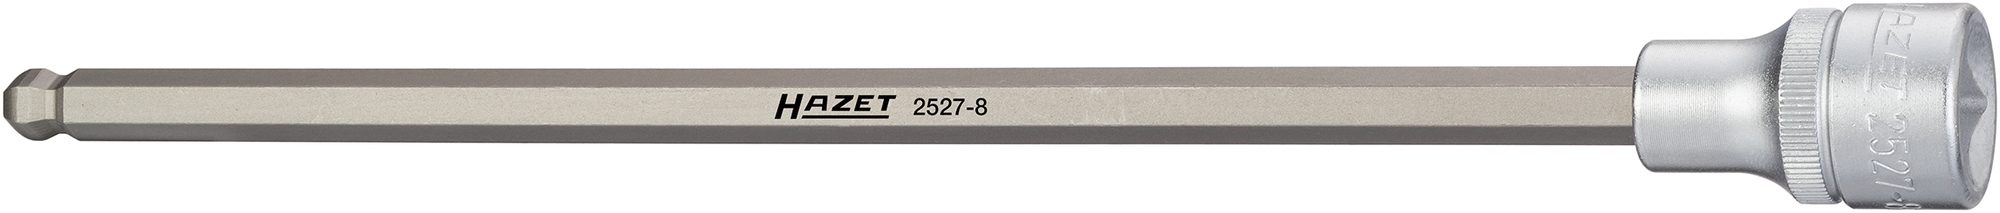 Hazet 2527-8 Kogelkop-dopsleutelbit - 1/2'' - Zeskant - 8mm